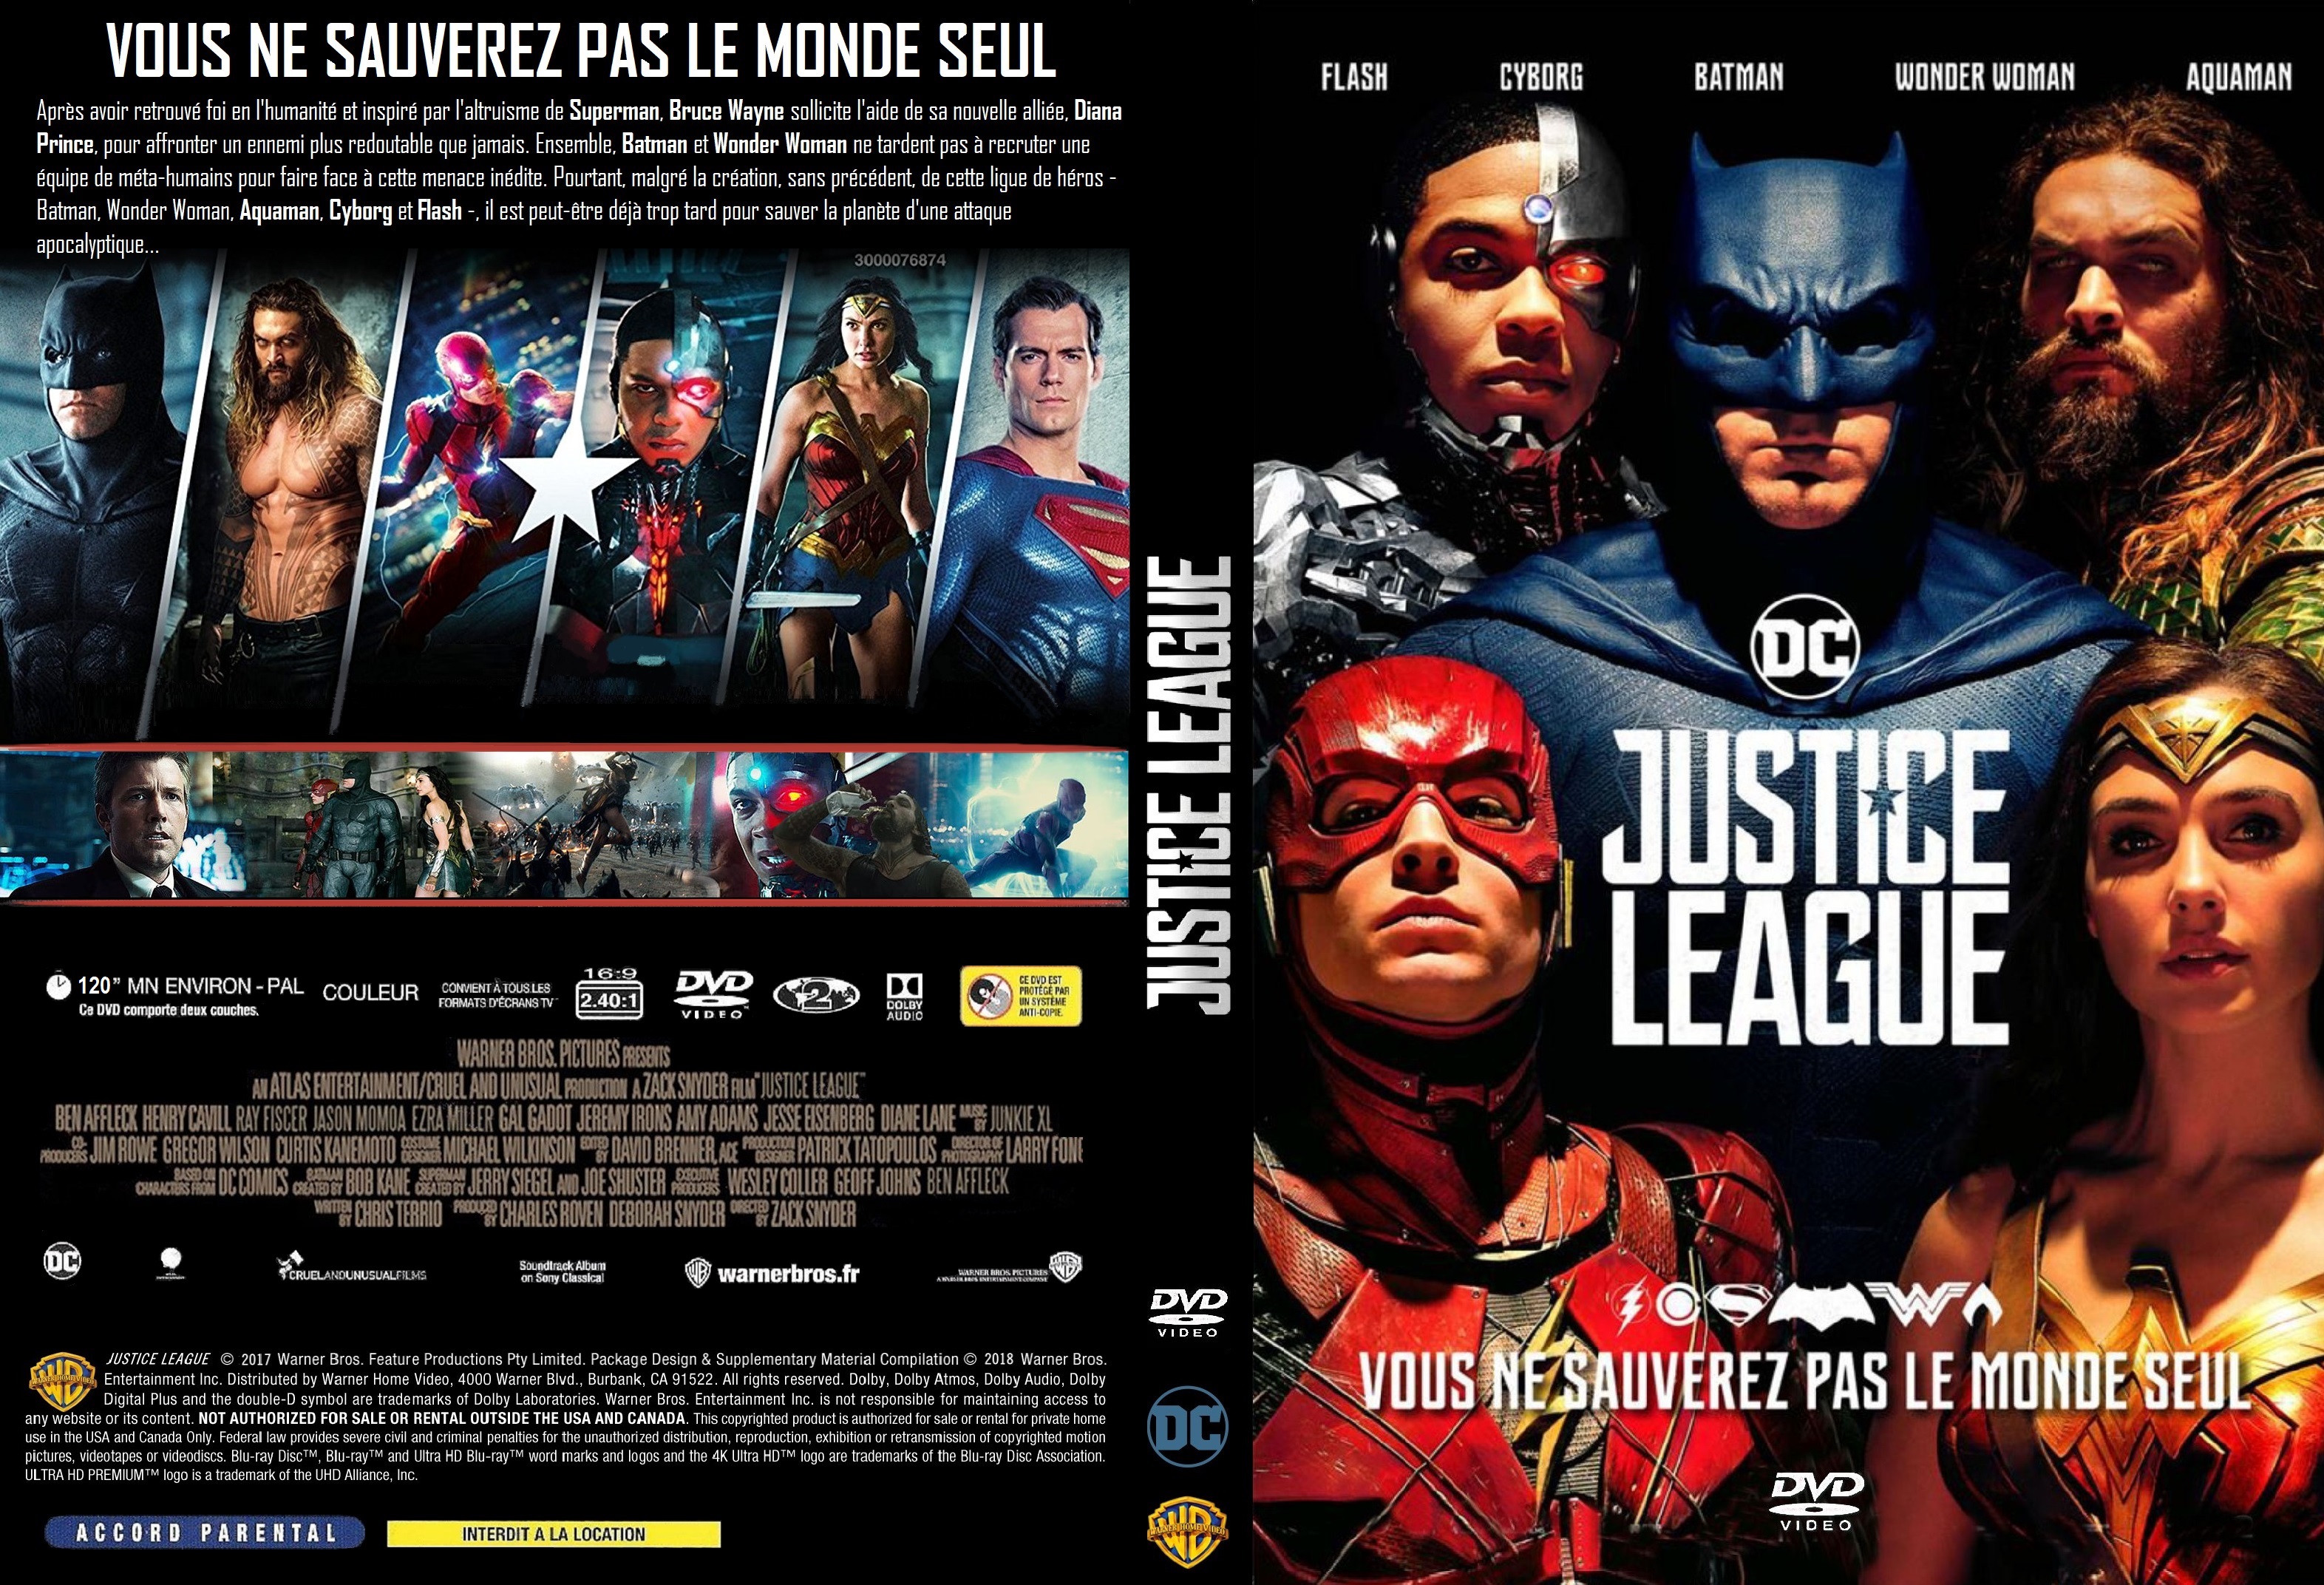 Jaquette DVD Justice League custom